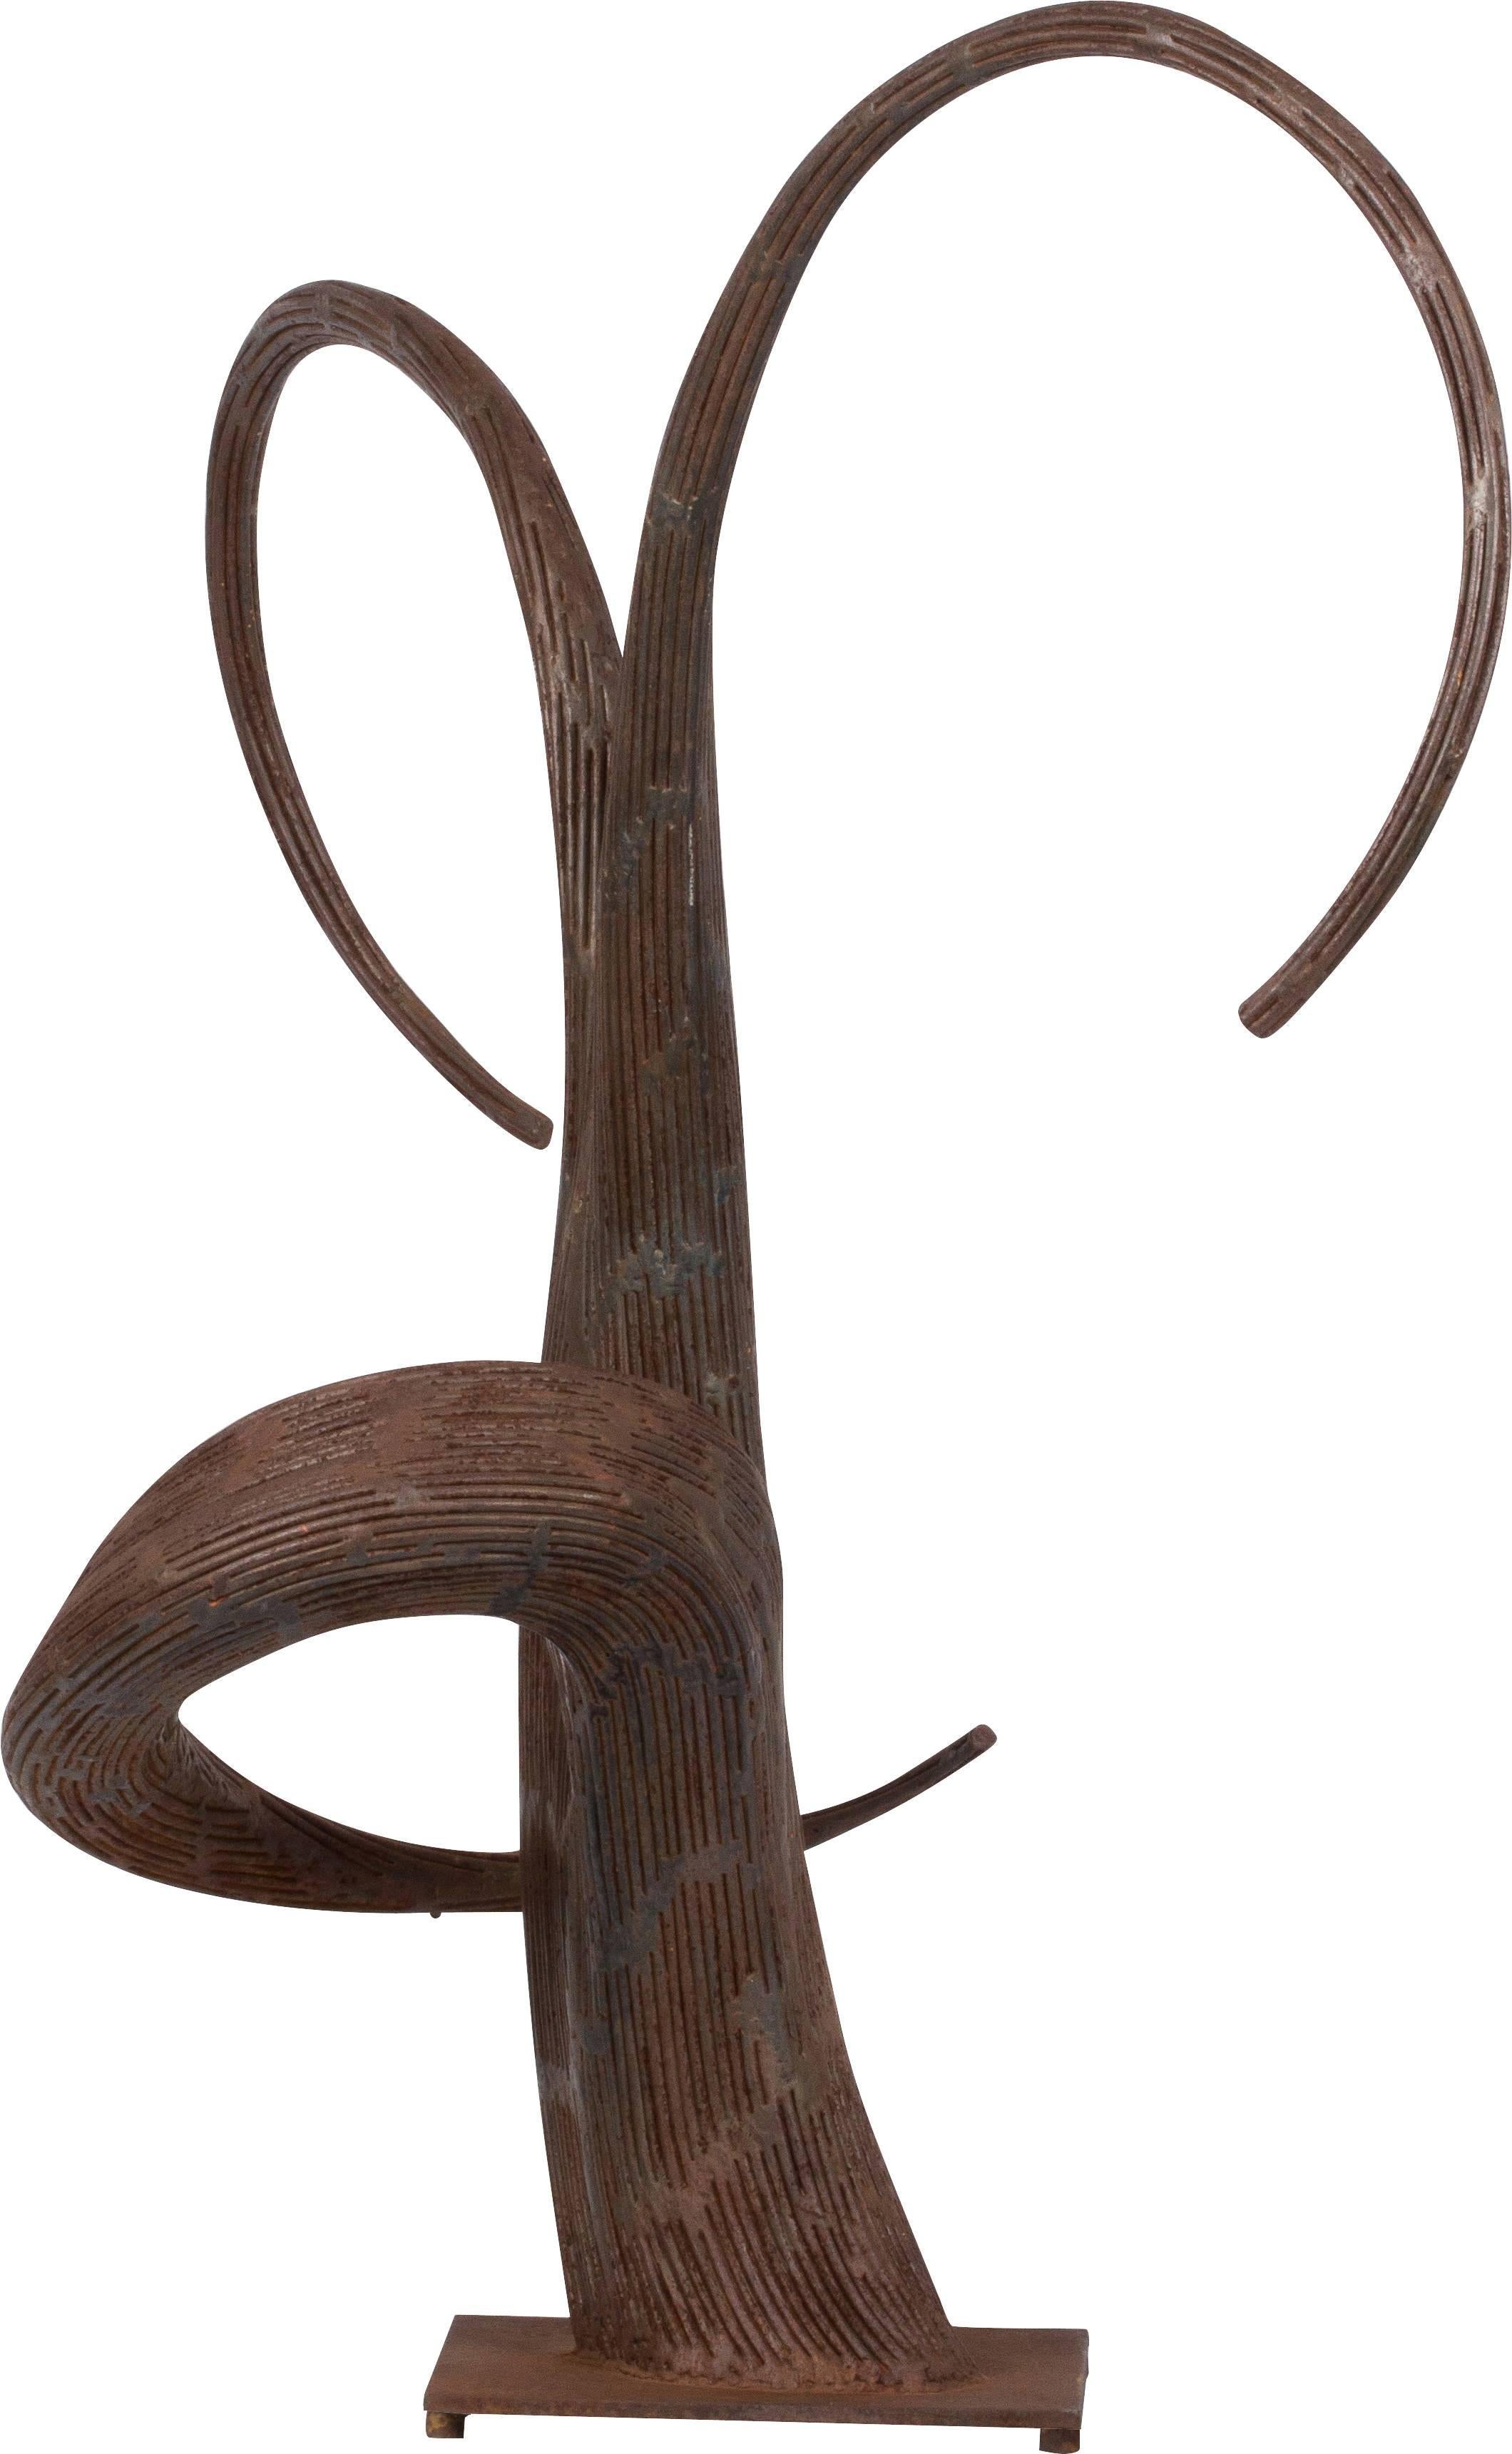 Sculpture biomorphique inhabituelle et spectaculaire en métal coulé, vers la fin des années 1980. La sculpture a une apparence organique, semblable à une racine d'arbre, avec deux vrilles courbes, semblables à des racines, qui dépassent vers le haut